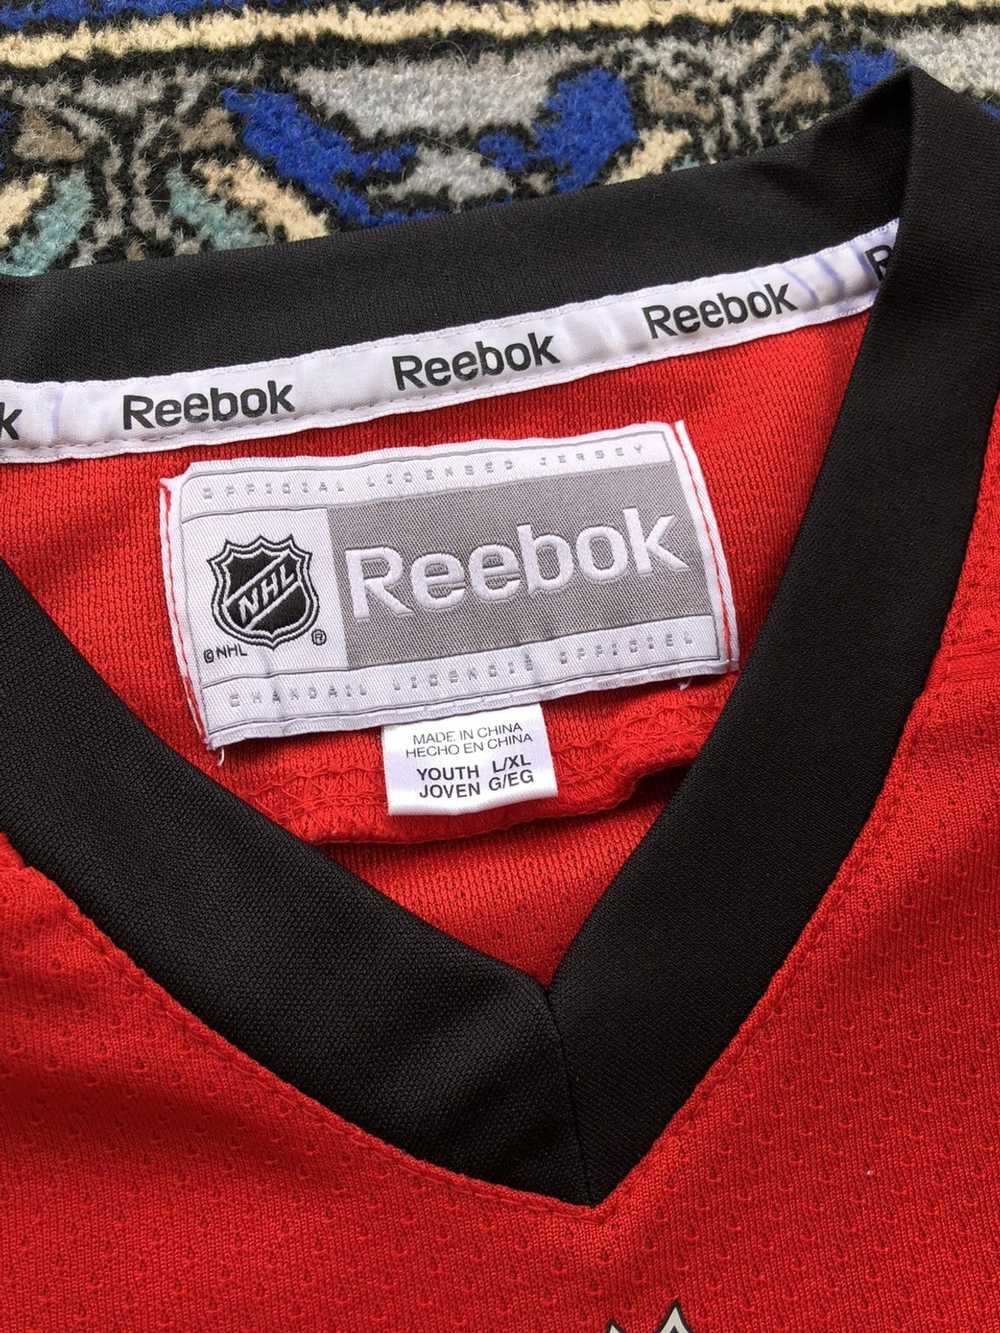 Vtg #88 PATRICK KANE Chicago Blackhawks NHL Reebok Jersey YL/YXL – XL3 VINTAGE  CLOTHING